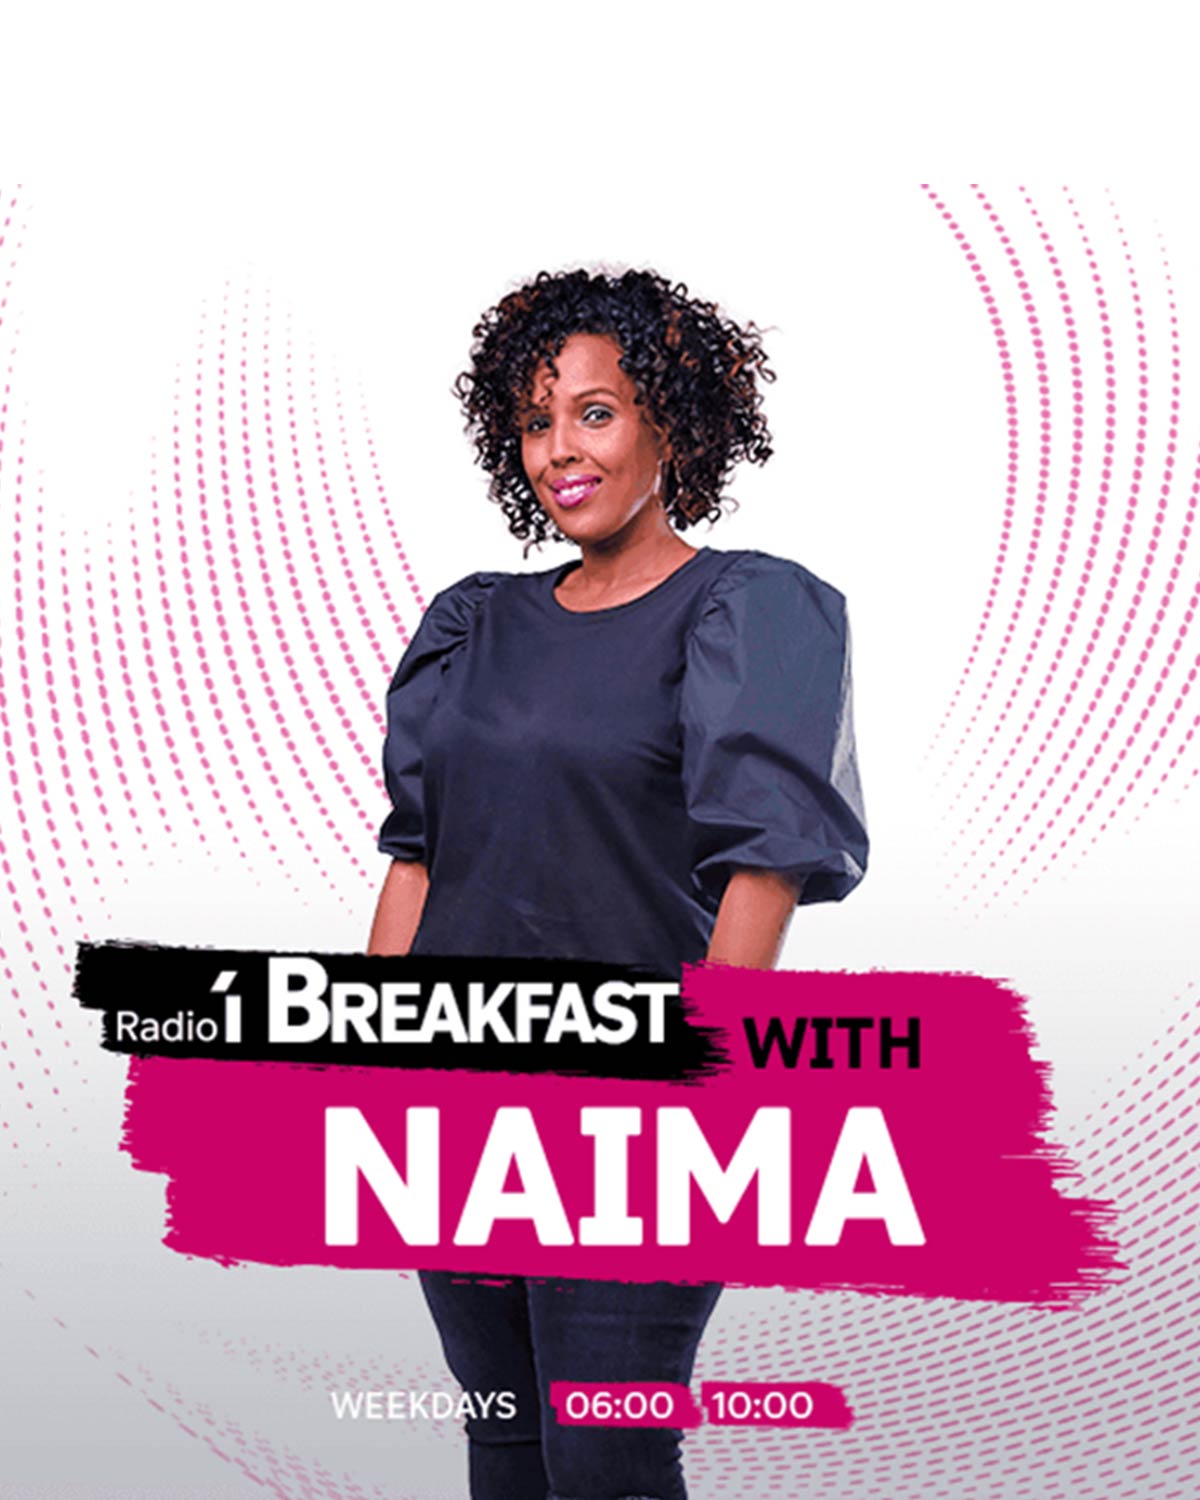 Breakfast with Naima, Radio 1